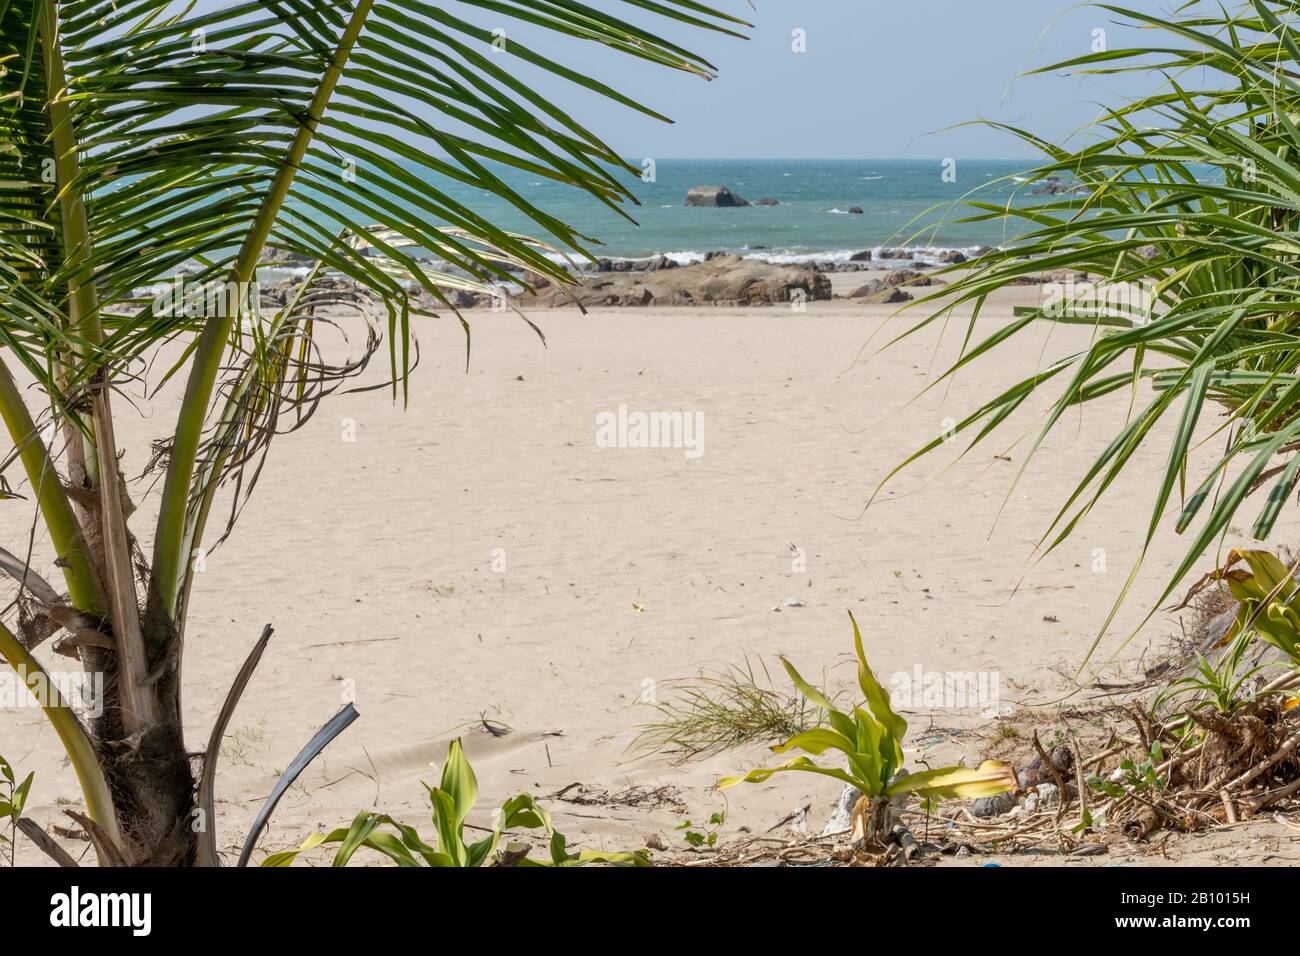 Palme in esotica spiaggia tropicale Foto Stock